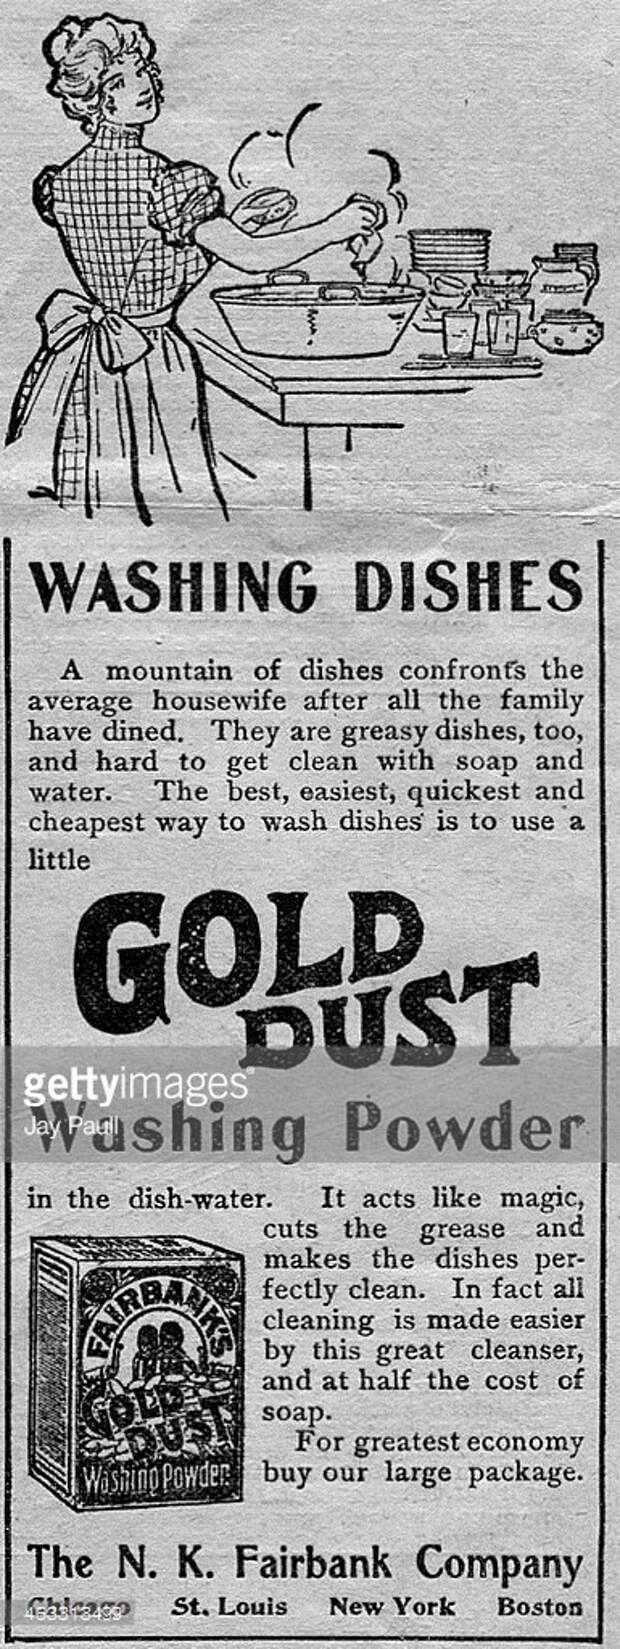 Реклама порошка для мытья посуды Gold Dust, Чикаго, Иллинойс, 1899. америка, история, реклама